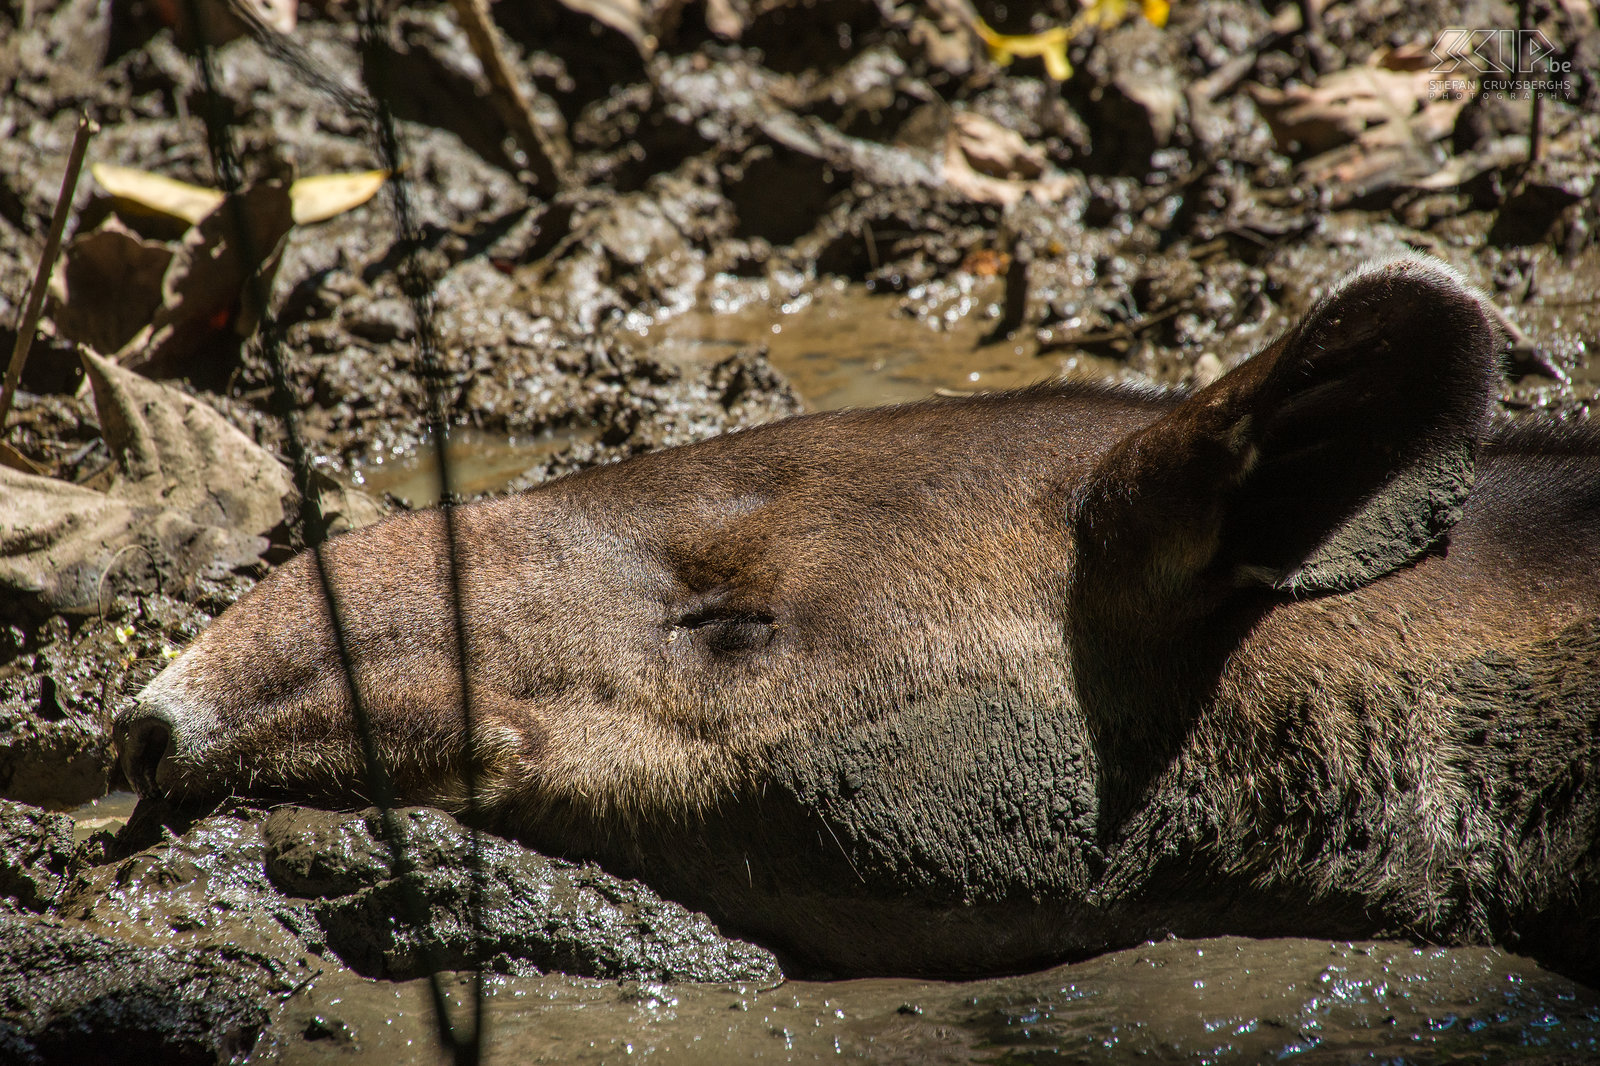 Corcovado - Closeup Baird's tapir Closeup of Baird's tapir (tapirus bairdii) in Corcovado national park. Stefan Cruysberghs